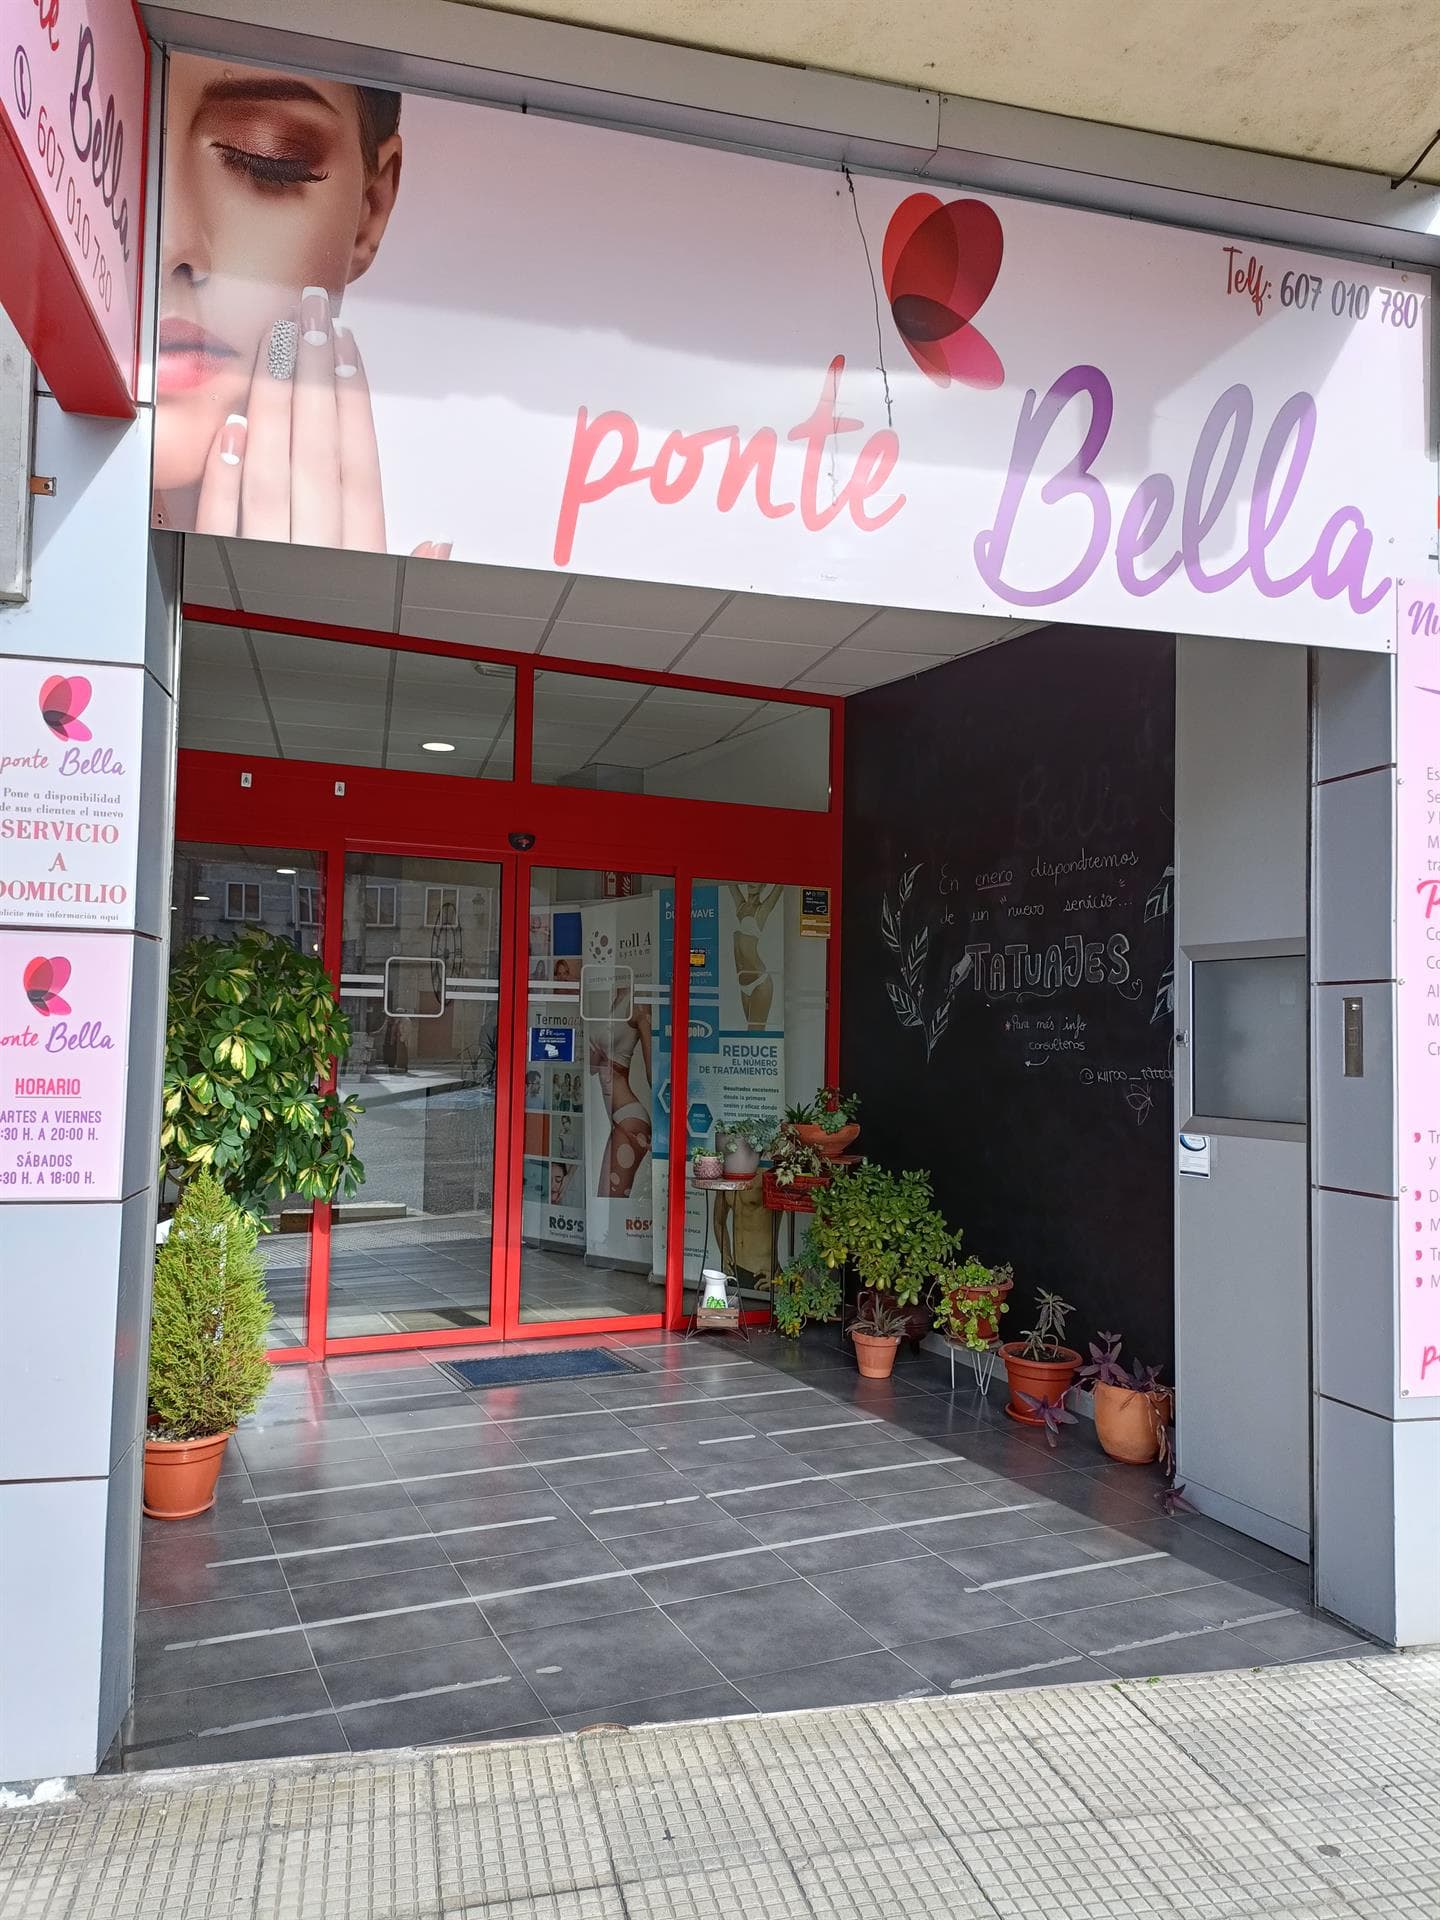 Ponte Bella - Peluquería y belleza en Ponteareas